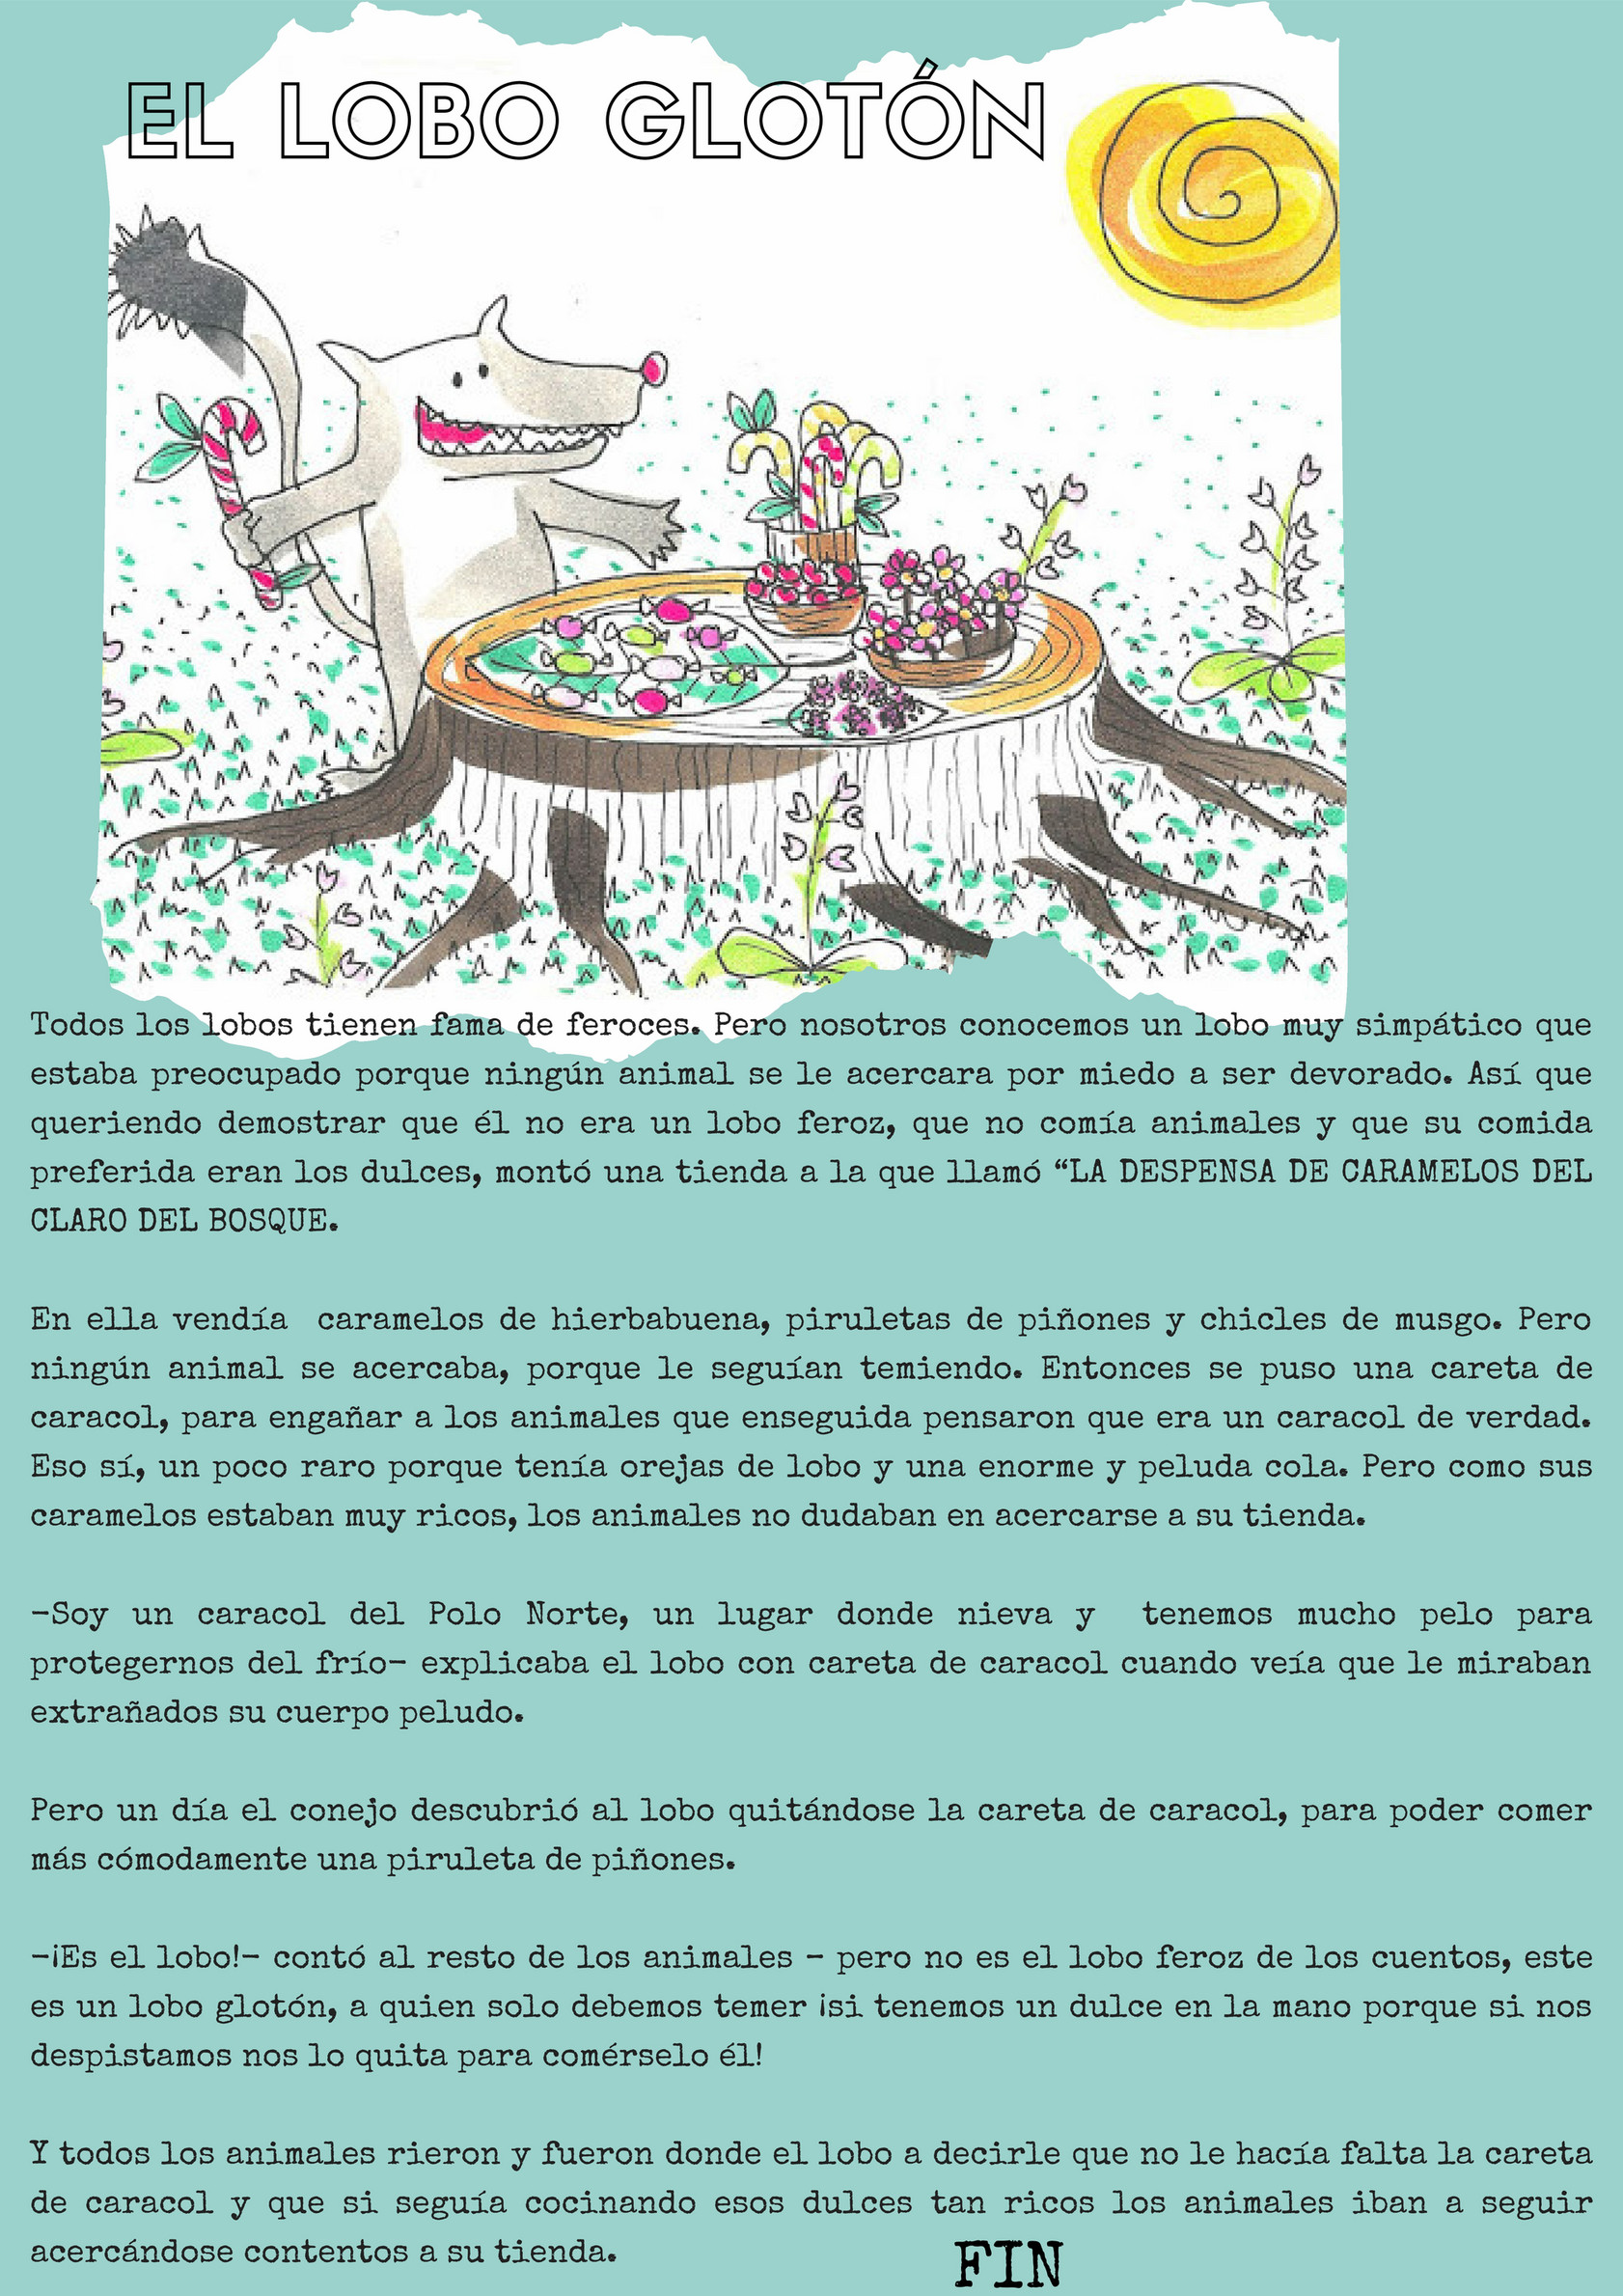 My publications - ¡Qué viene el lobo! - Página 8 - Created with 